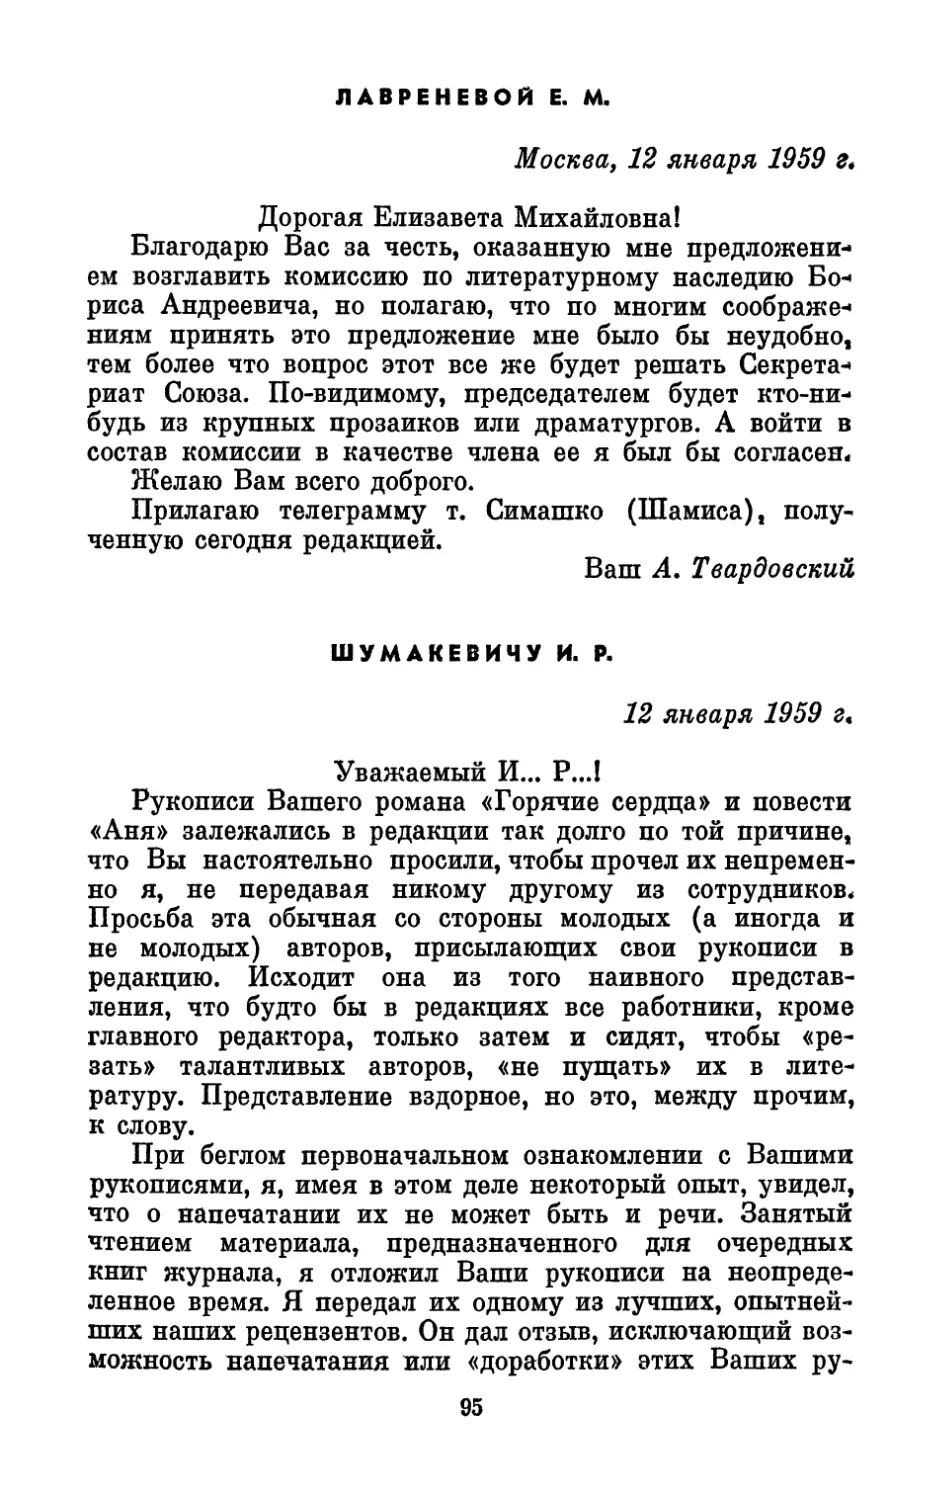 Лавреневой Е. М., 12 января 1959 г.
Шумакевичу И. Р., 12 января 1959 г.